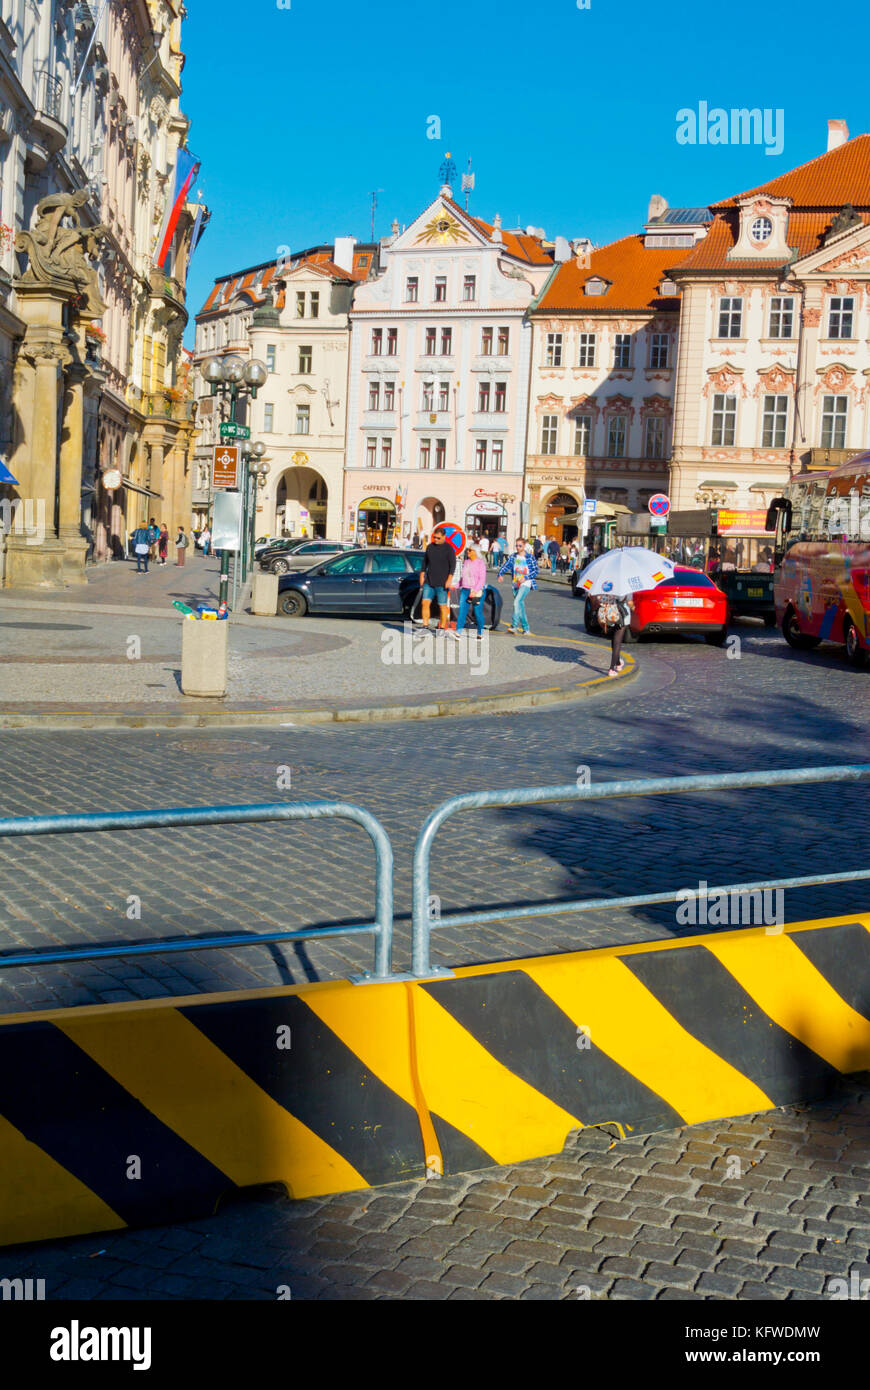 Barreras de bloques de hormigón, instalado en el otoño de 2017 por razones de seguridad, la plaza de la ciudad vieja de Praga, República Checa Foto de stock